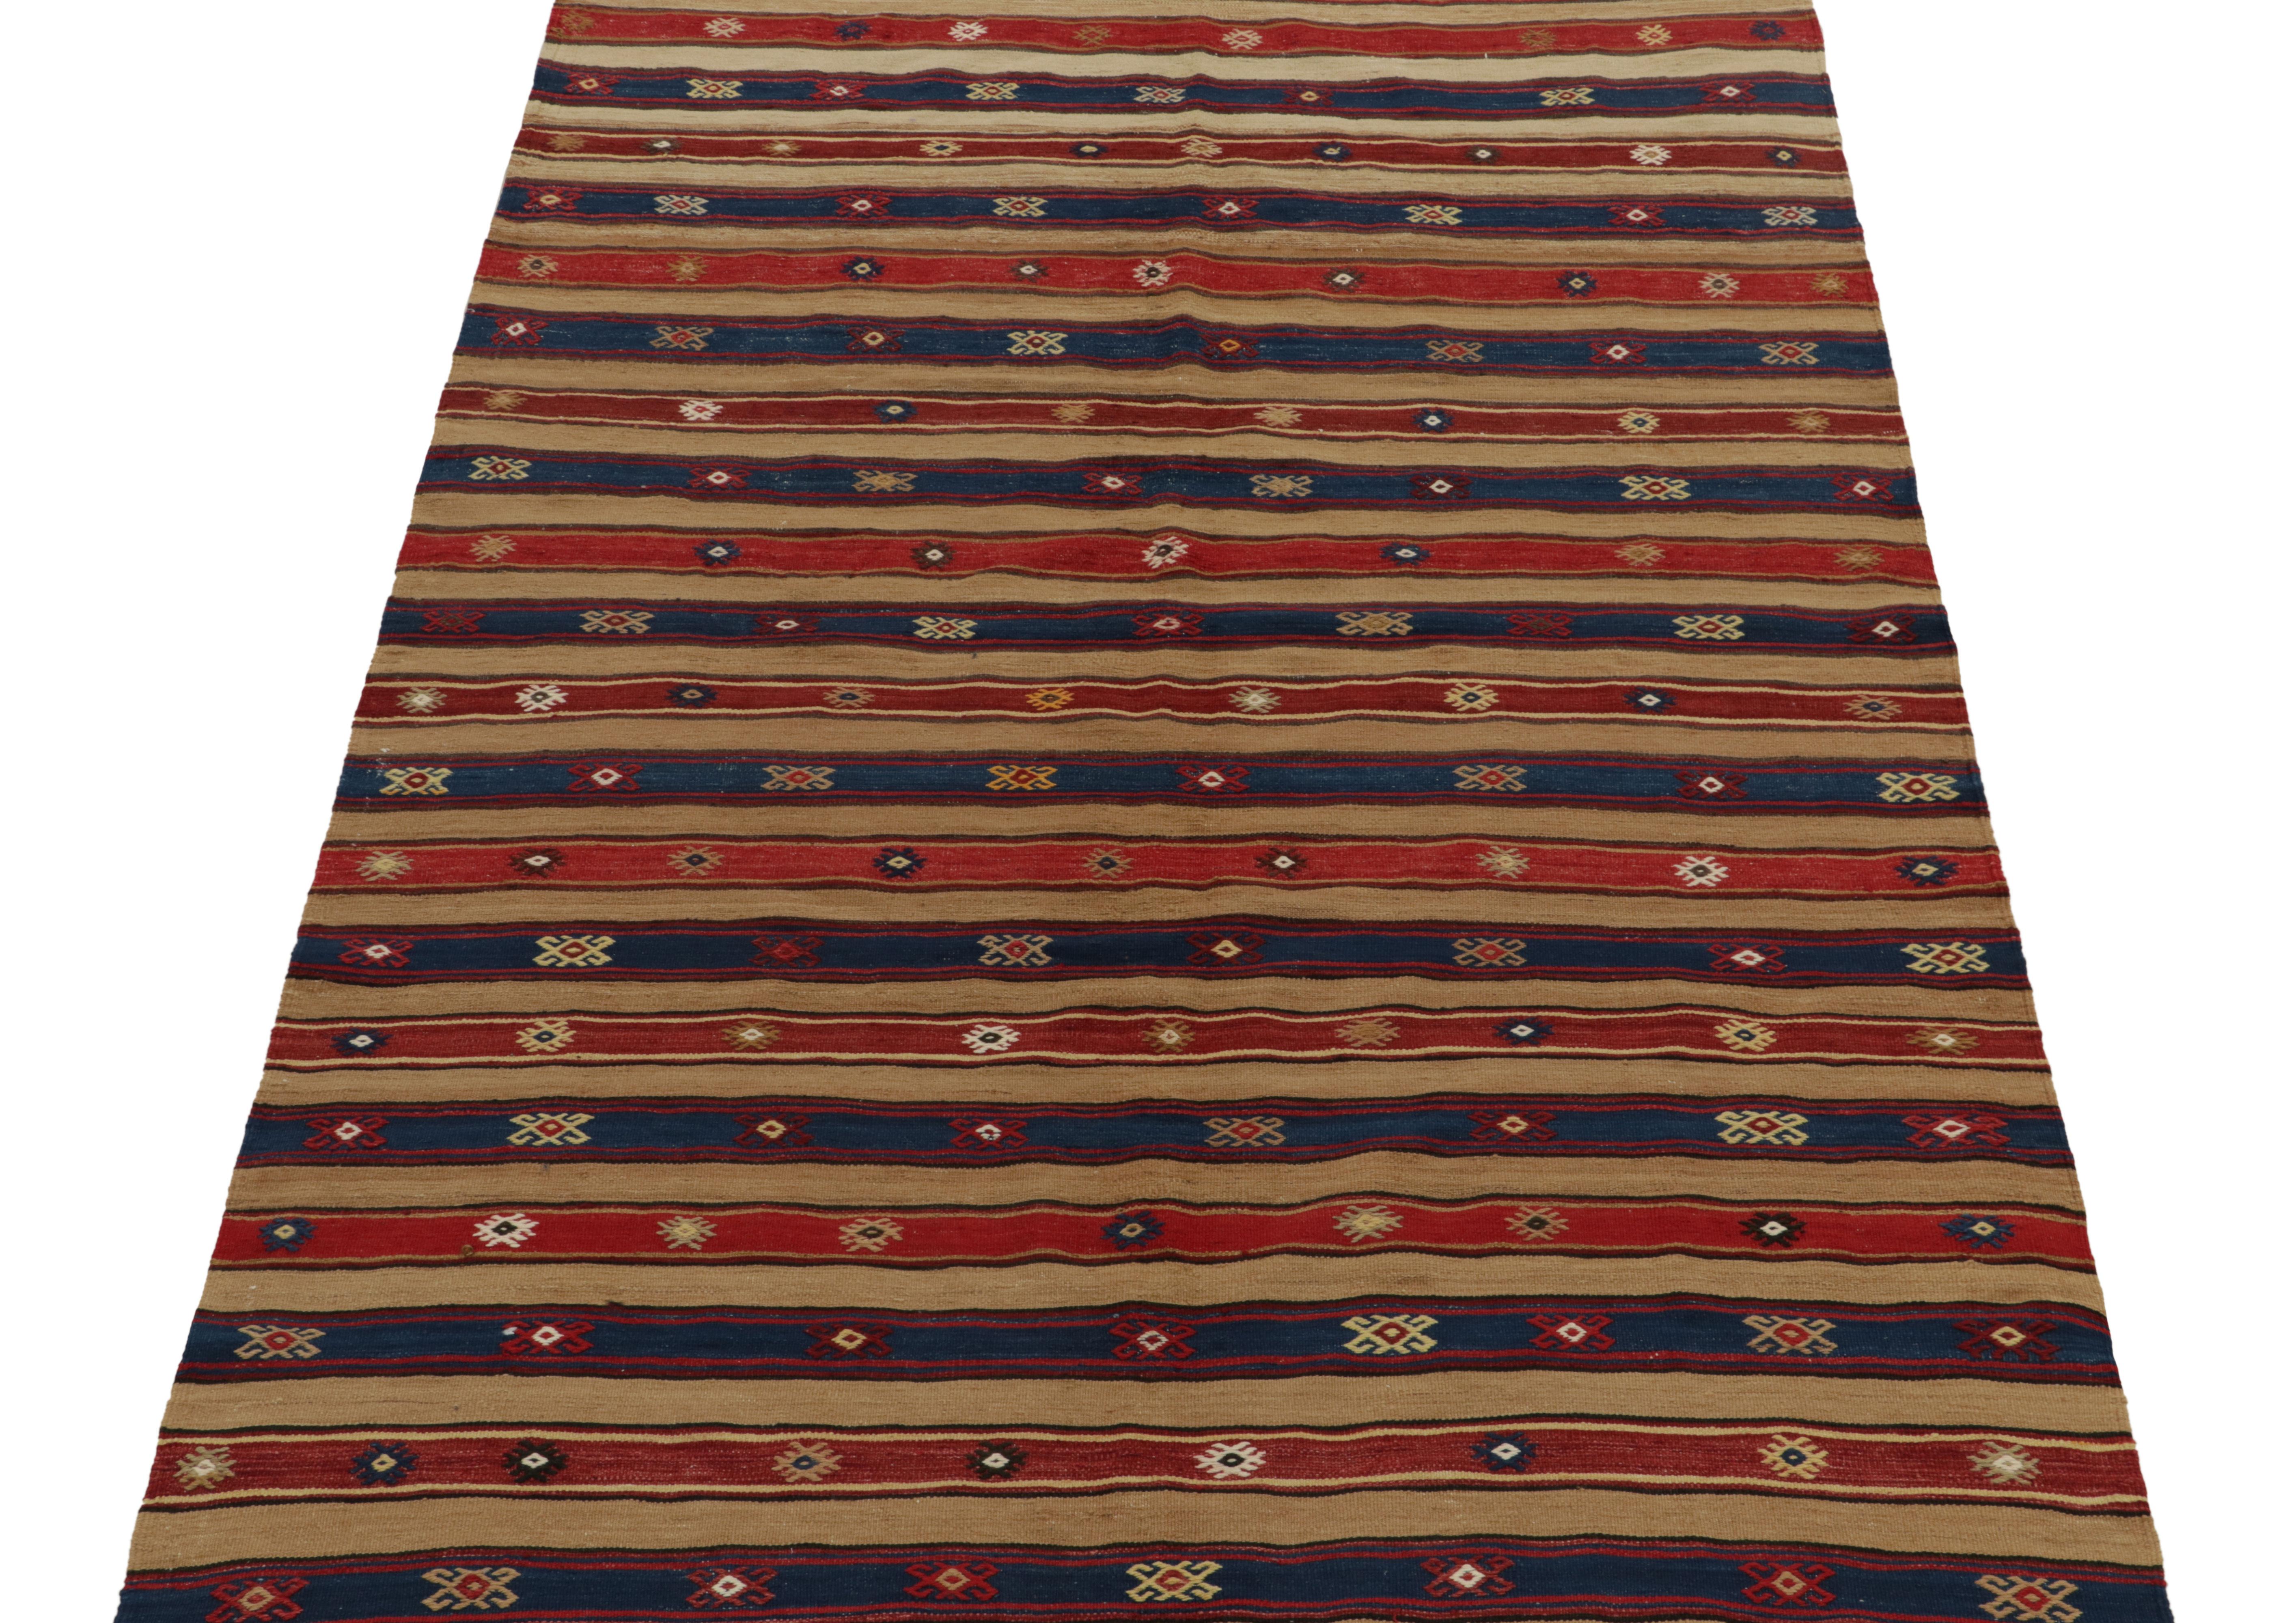 Tribal 1950s Vintage Turkish Kilim in Red, Blue and Beige-Brown Stripes by Rug & Kilim